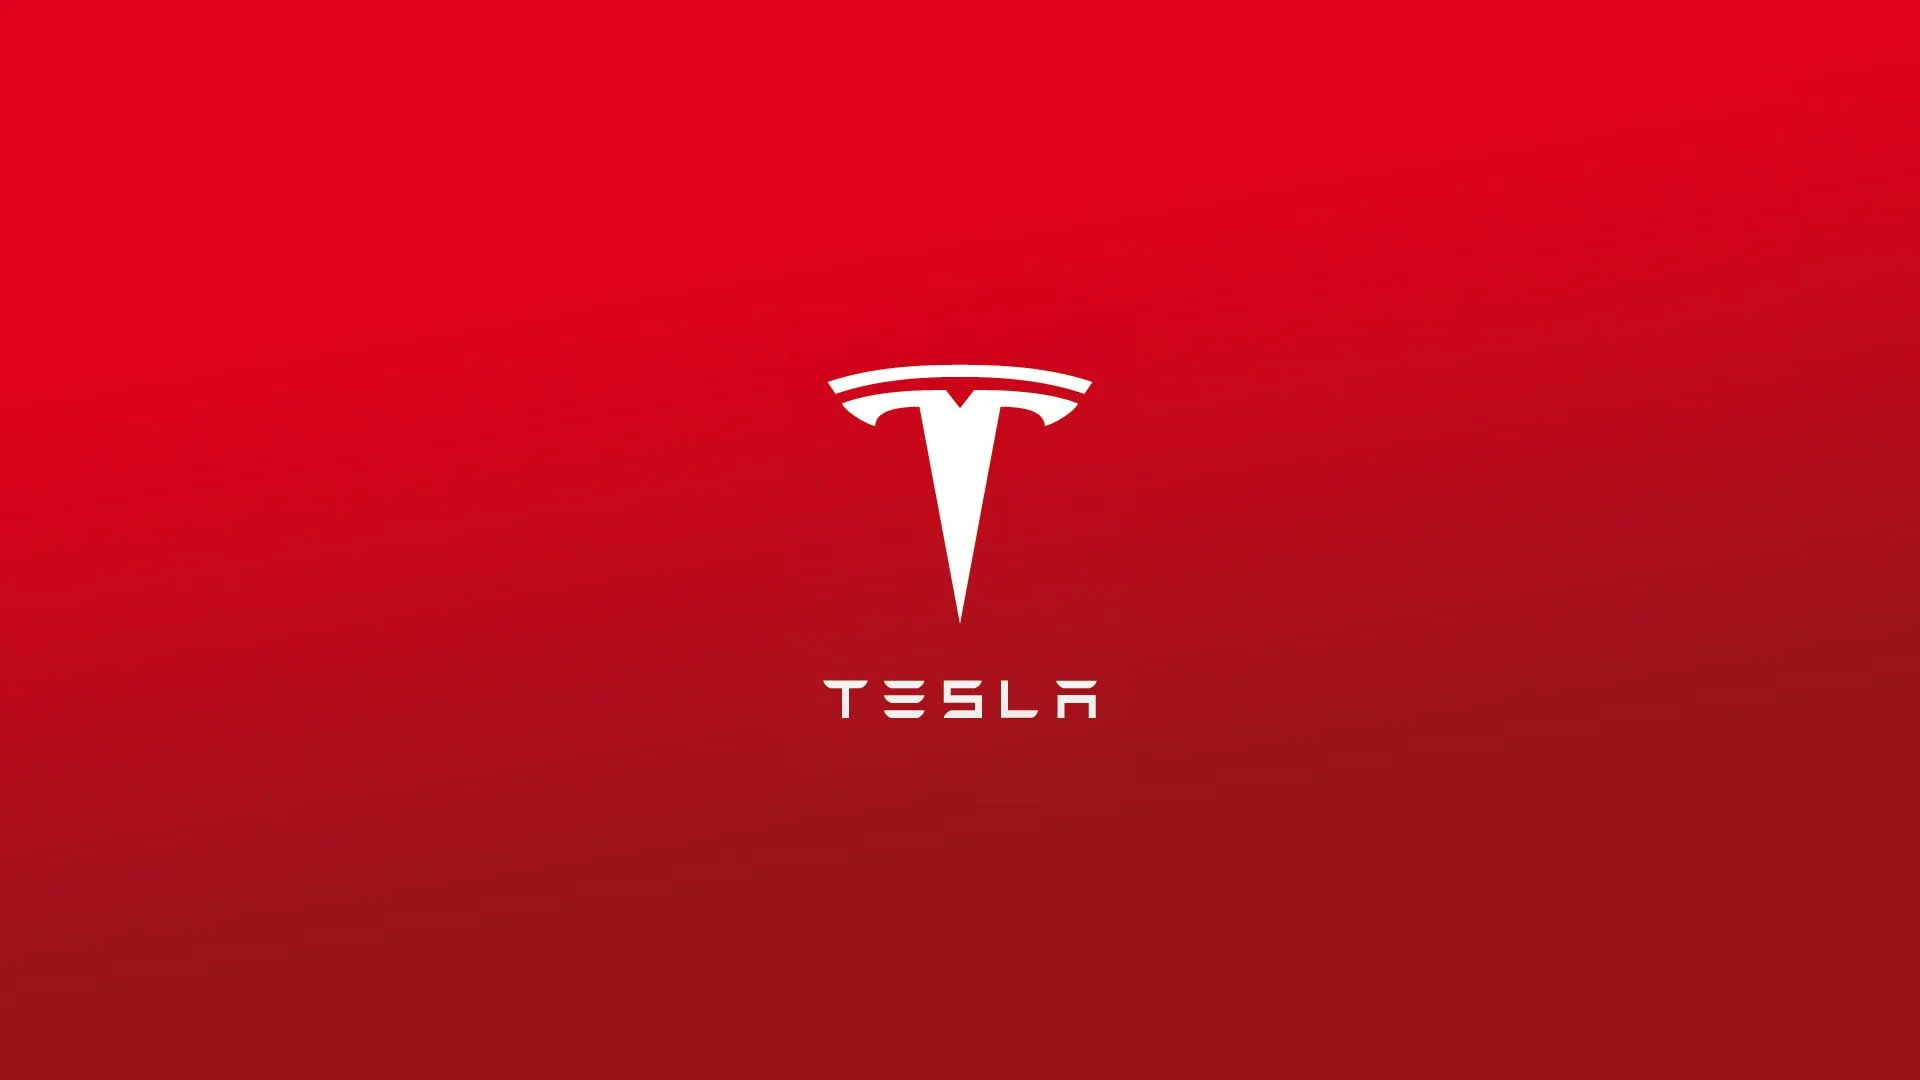 Tesla stock price prediction 2023, 2025, 2030, 2040, 2050